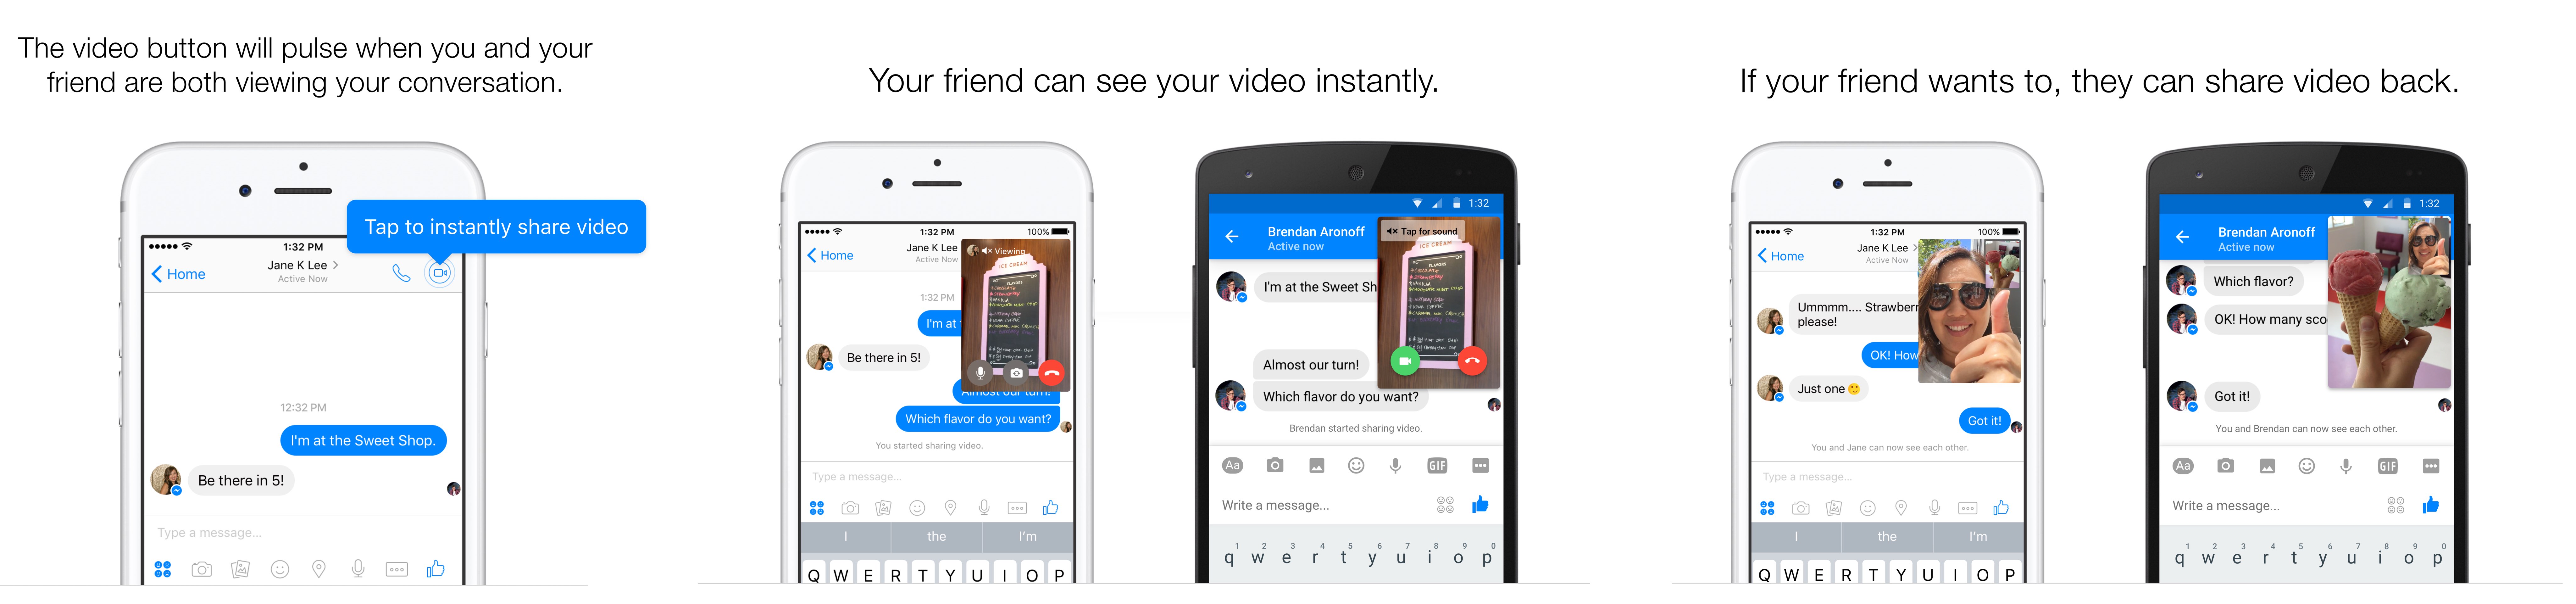 Facebook Messenger Instant Video teaser 002